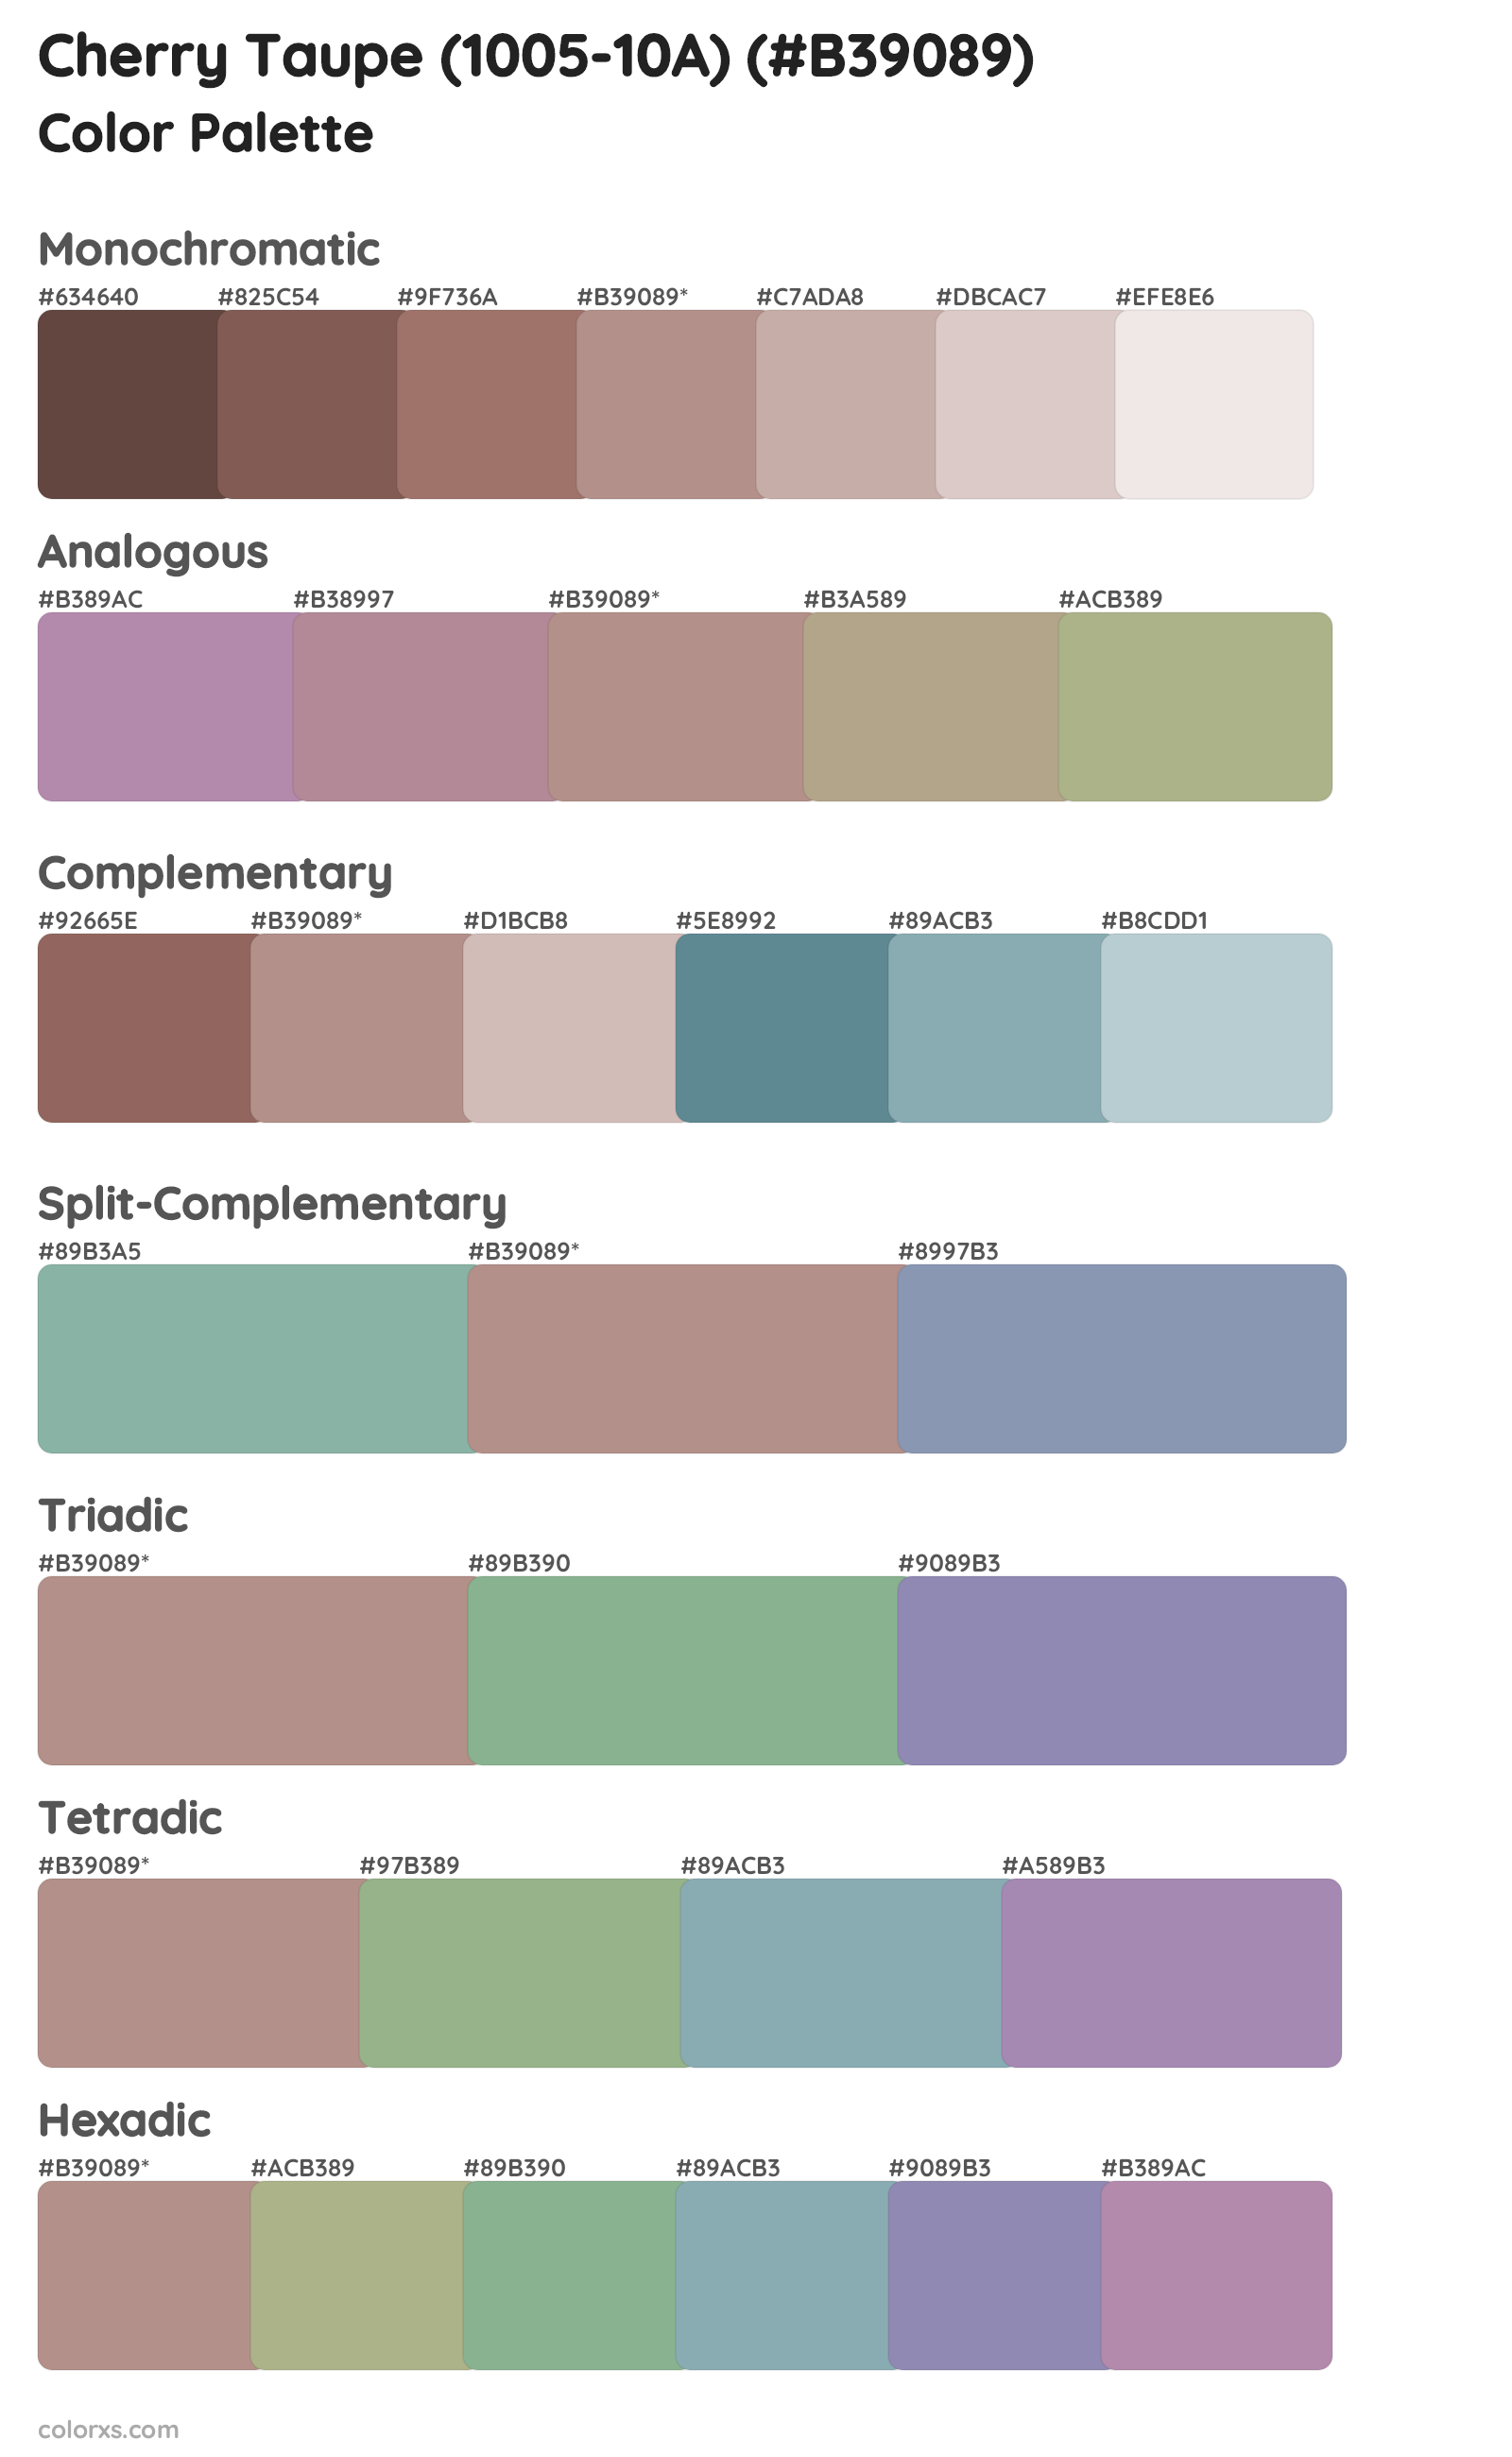 Cherry Taupe (1005-10A) Color Scheme Palettes